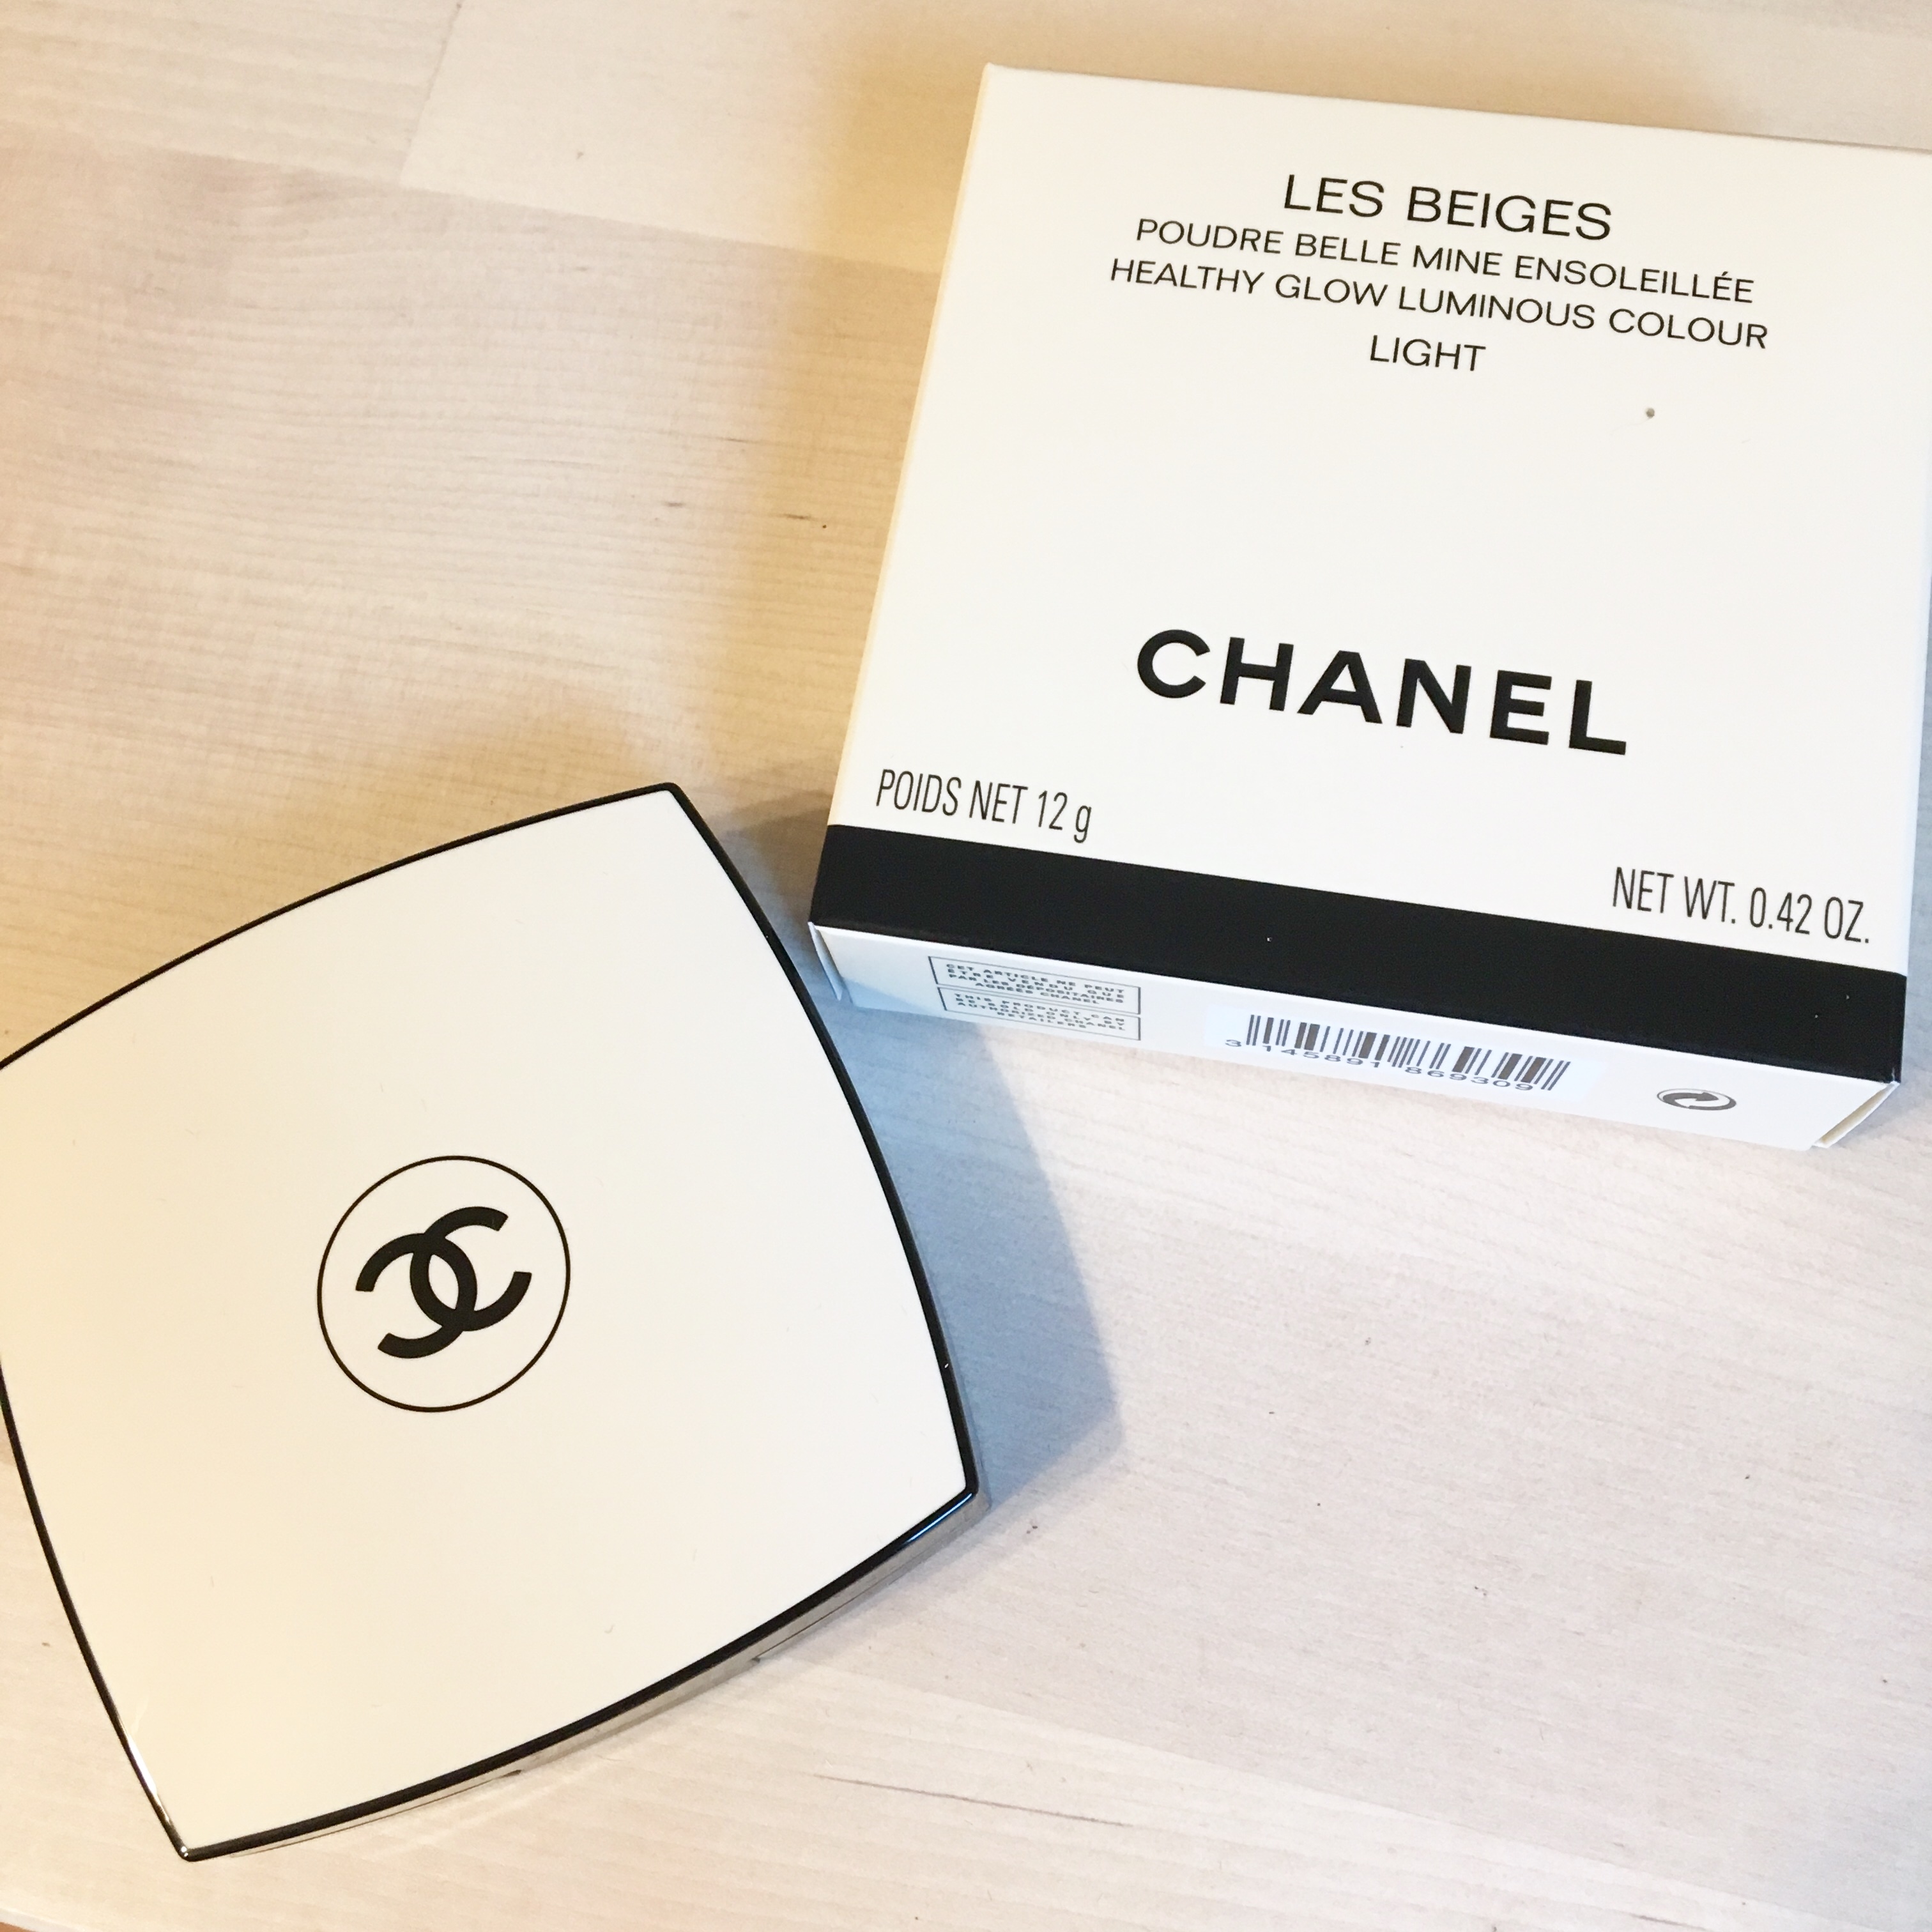 Chanel レ ベージュのプードゥル ベル ミン アンソレイエで夏の艶肌を手に入れる 小腹が空いたら覗く部屋